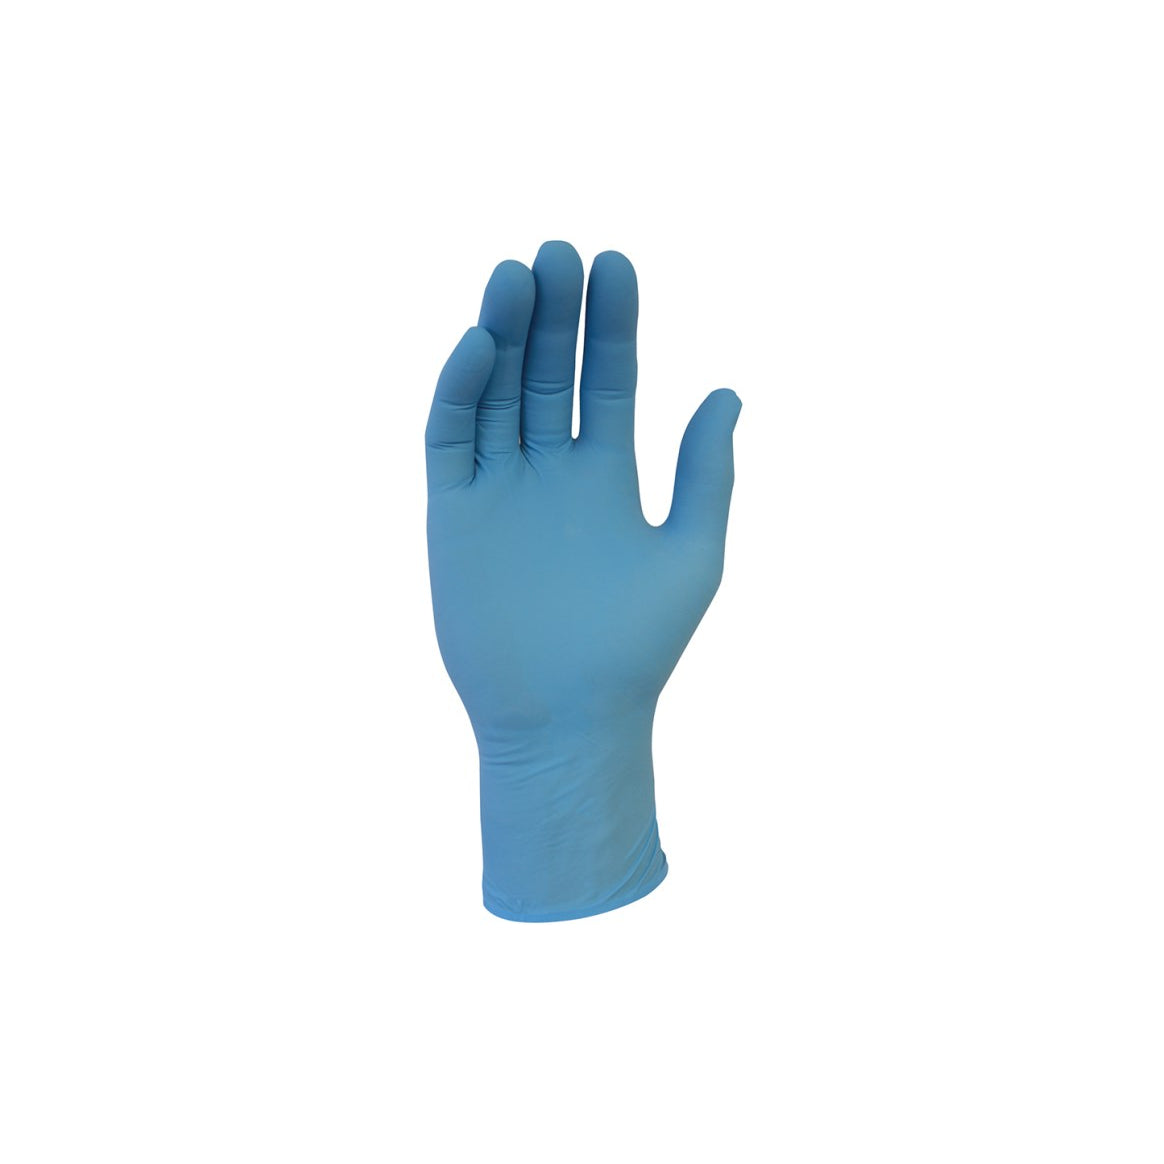 Disposable Vinyl Gloves Medium 100